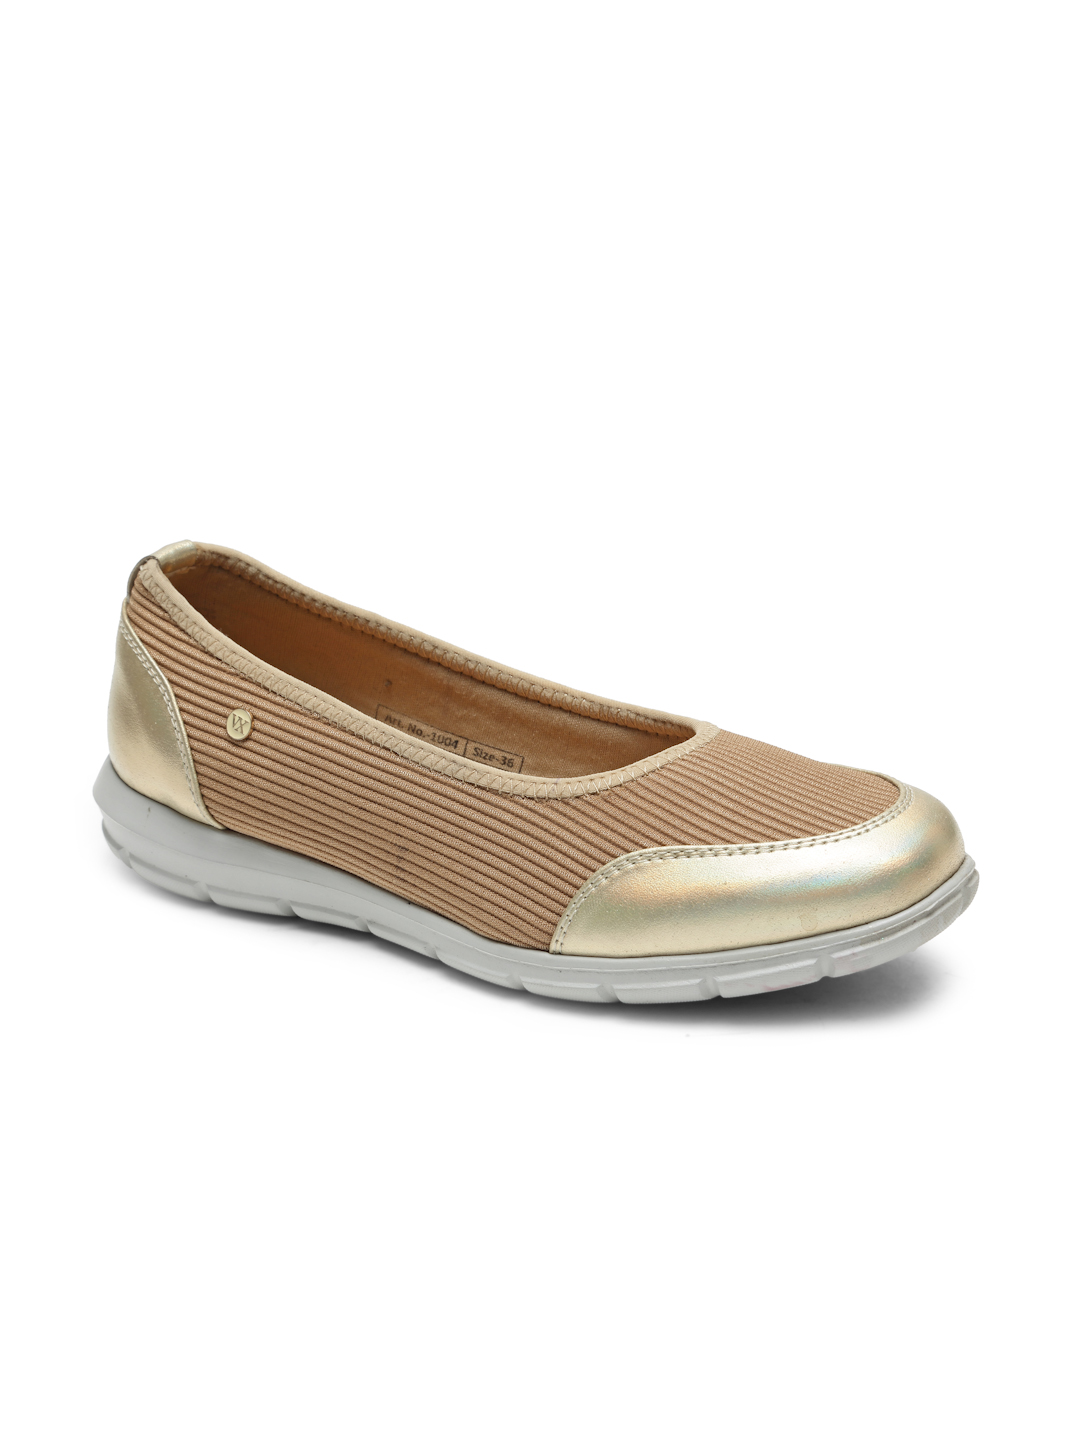 Buy Von Wellx Germany Comfort Women's Beige Casual Shoes Alice Online in Noida